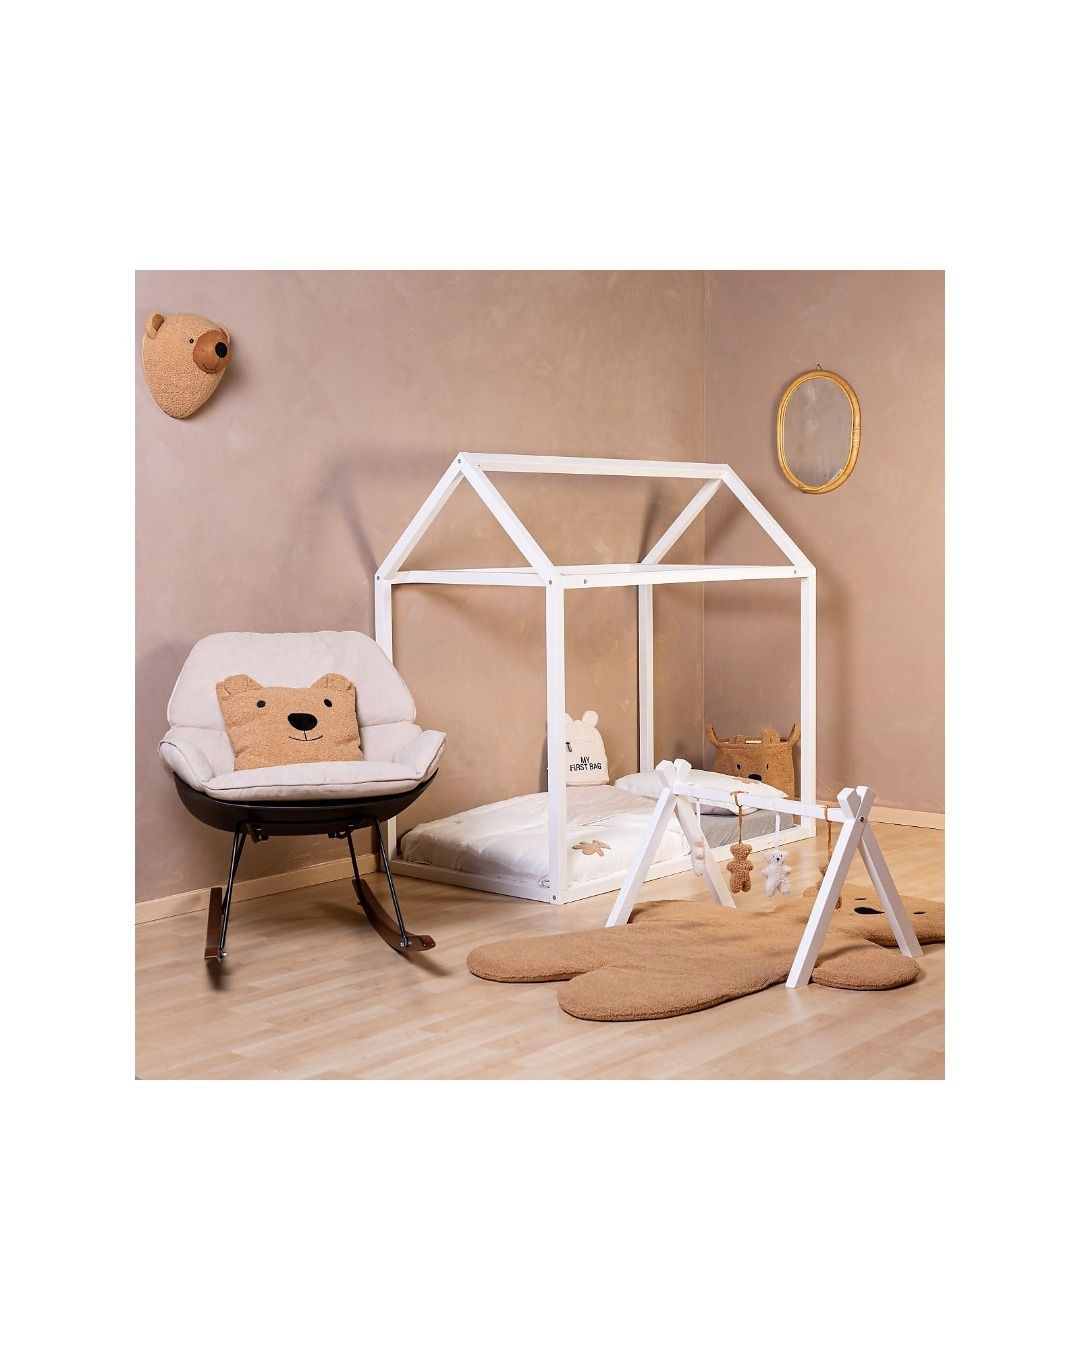 Cott Lettino montessori per bambini letto casetta in legno 70x140cm